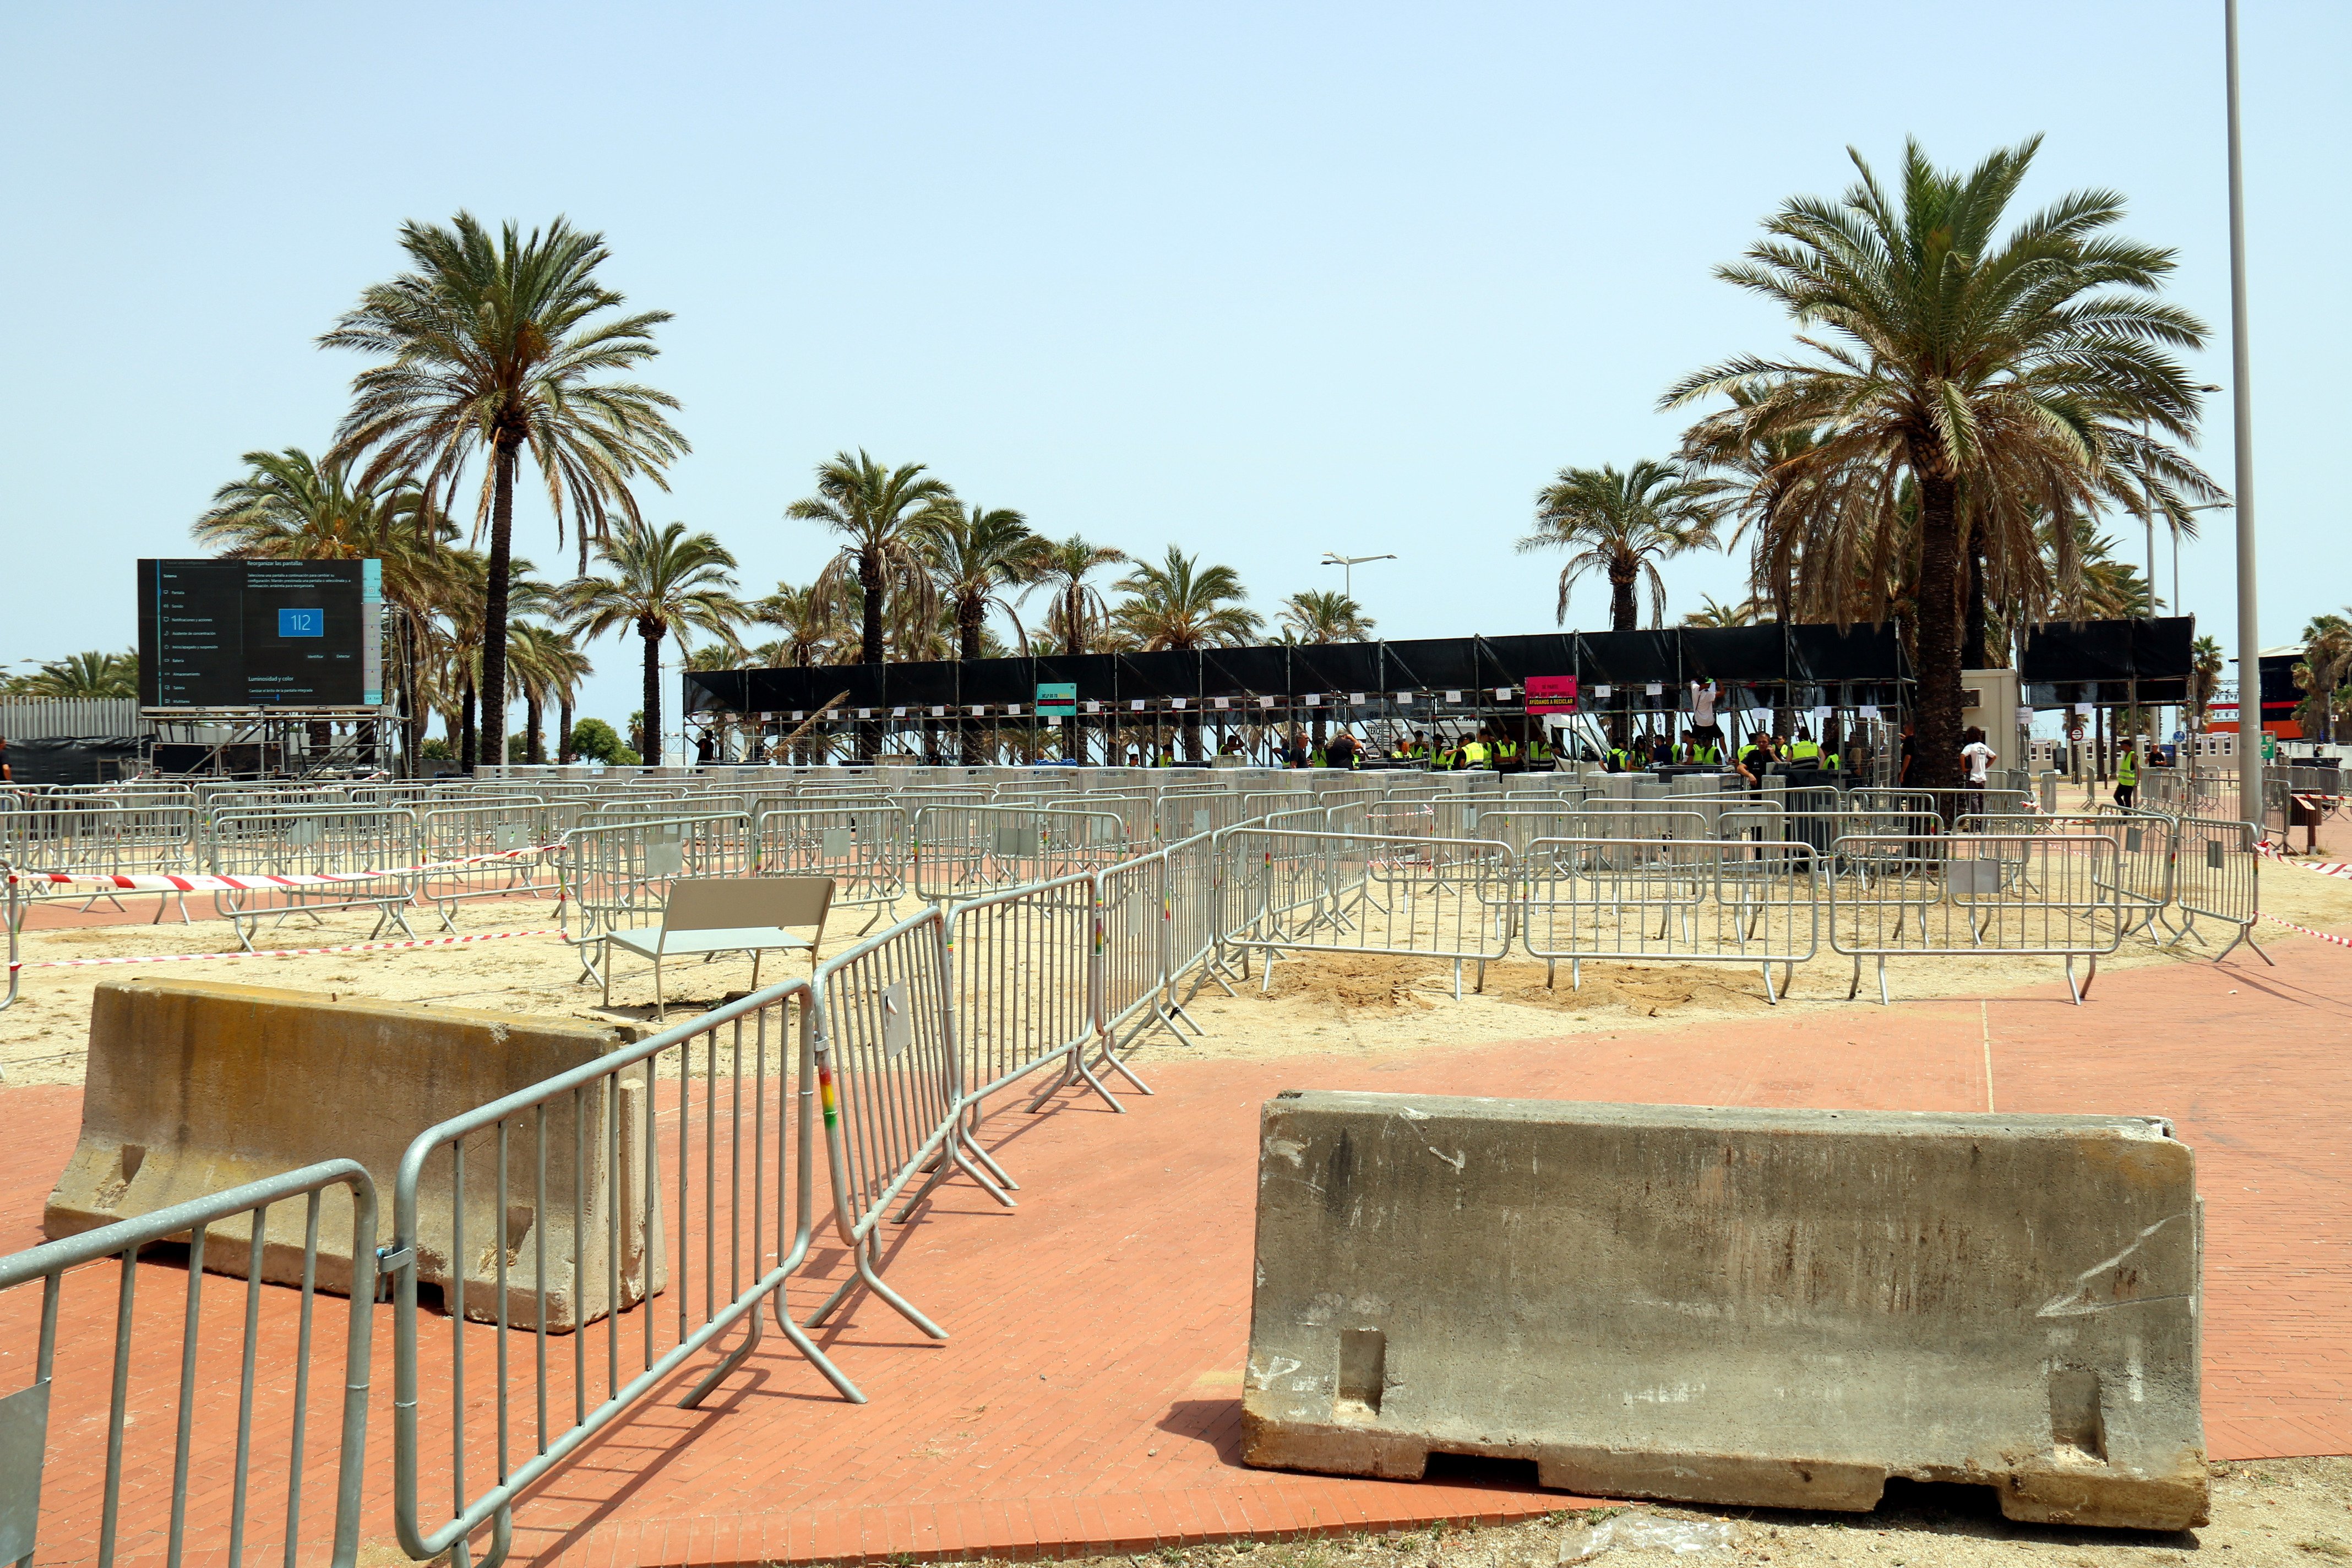 Empieza el Barcelona Beach Festival: "Estábamos desolados por una situación irracional y esperpéntica"